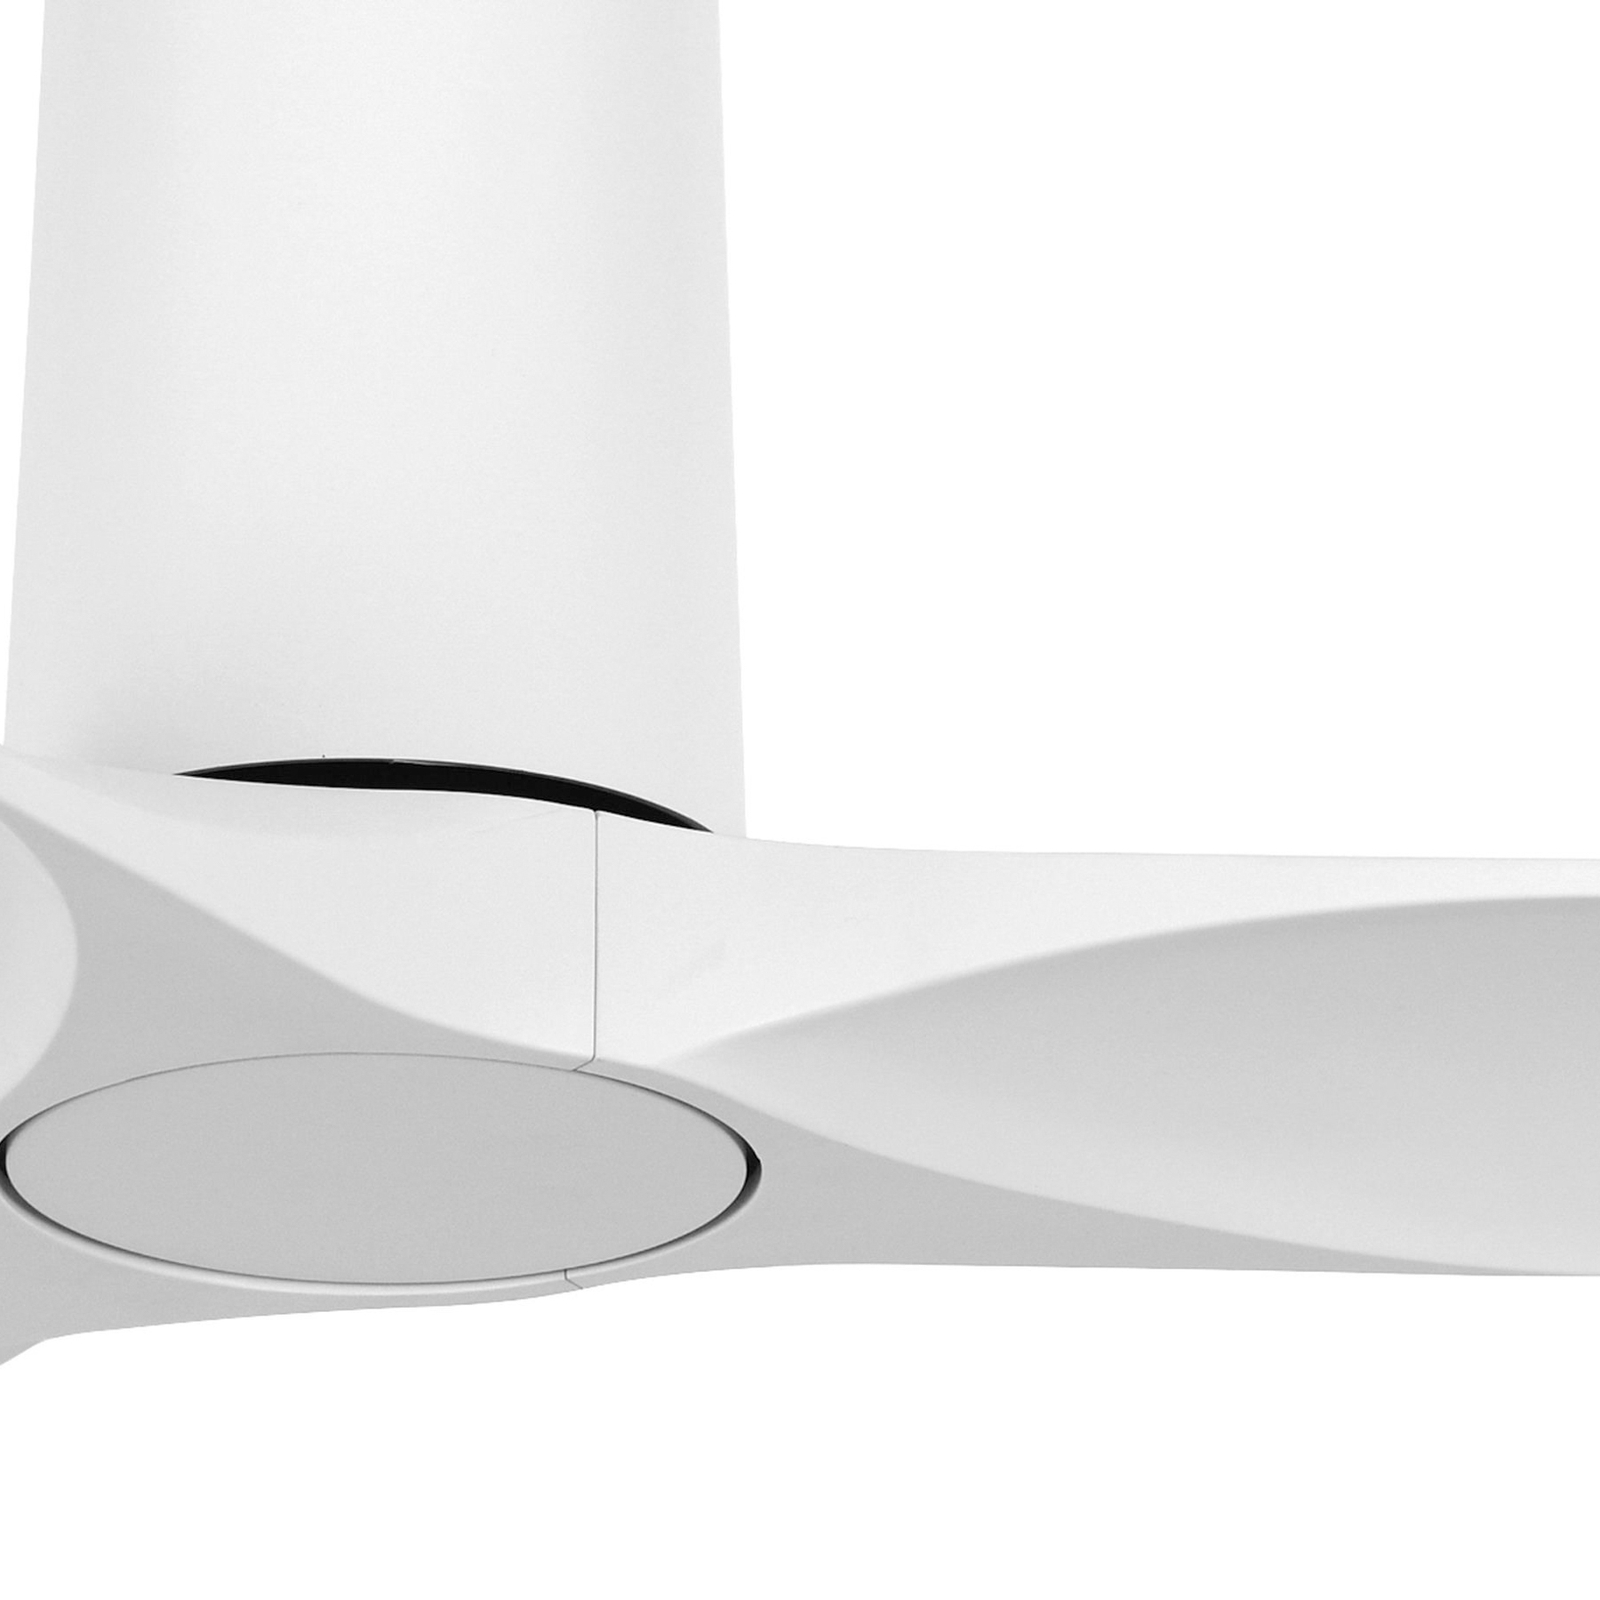 Beacon ceiling fan Londo white DC motor Ø 132 cm quiet